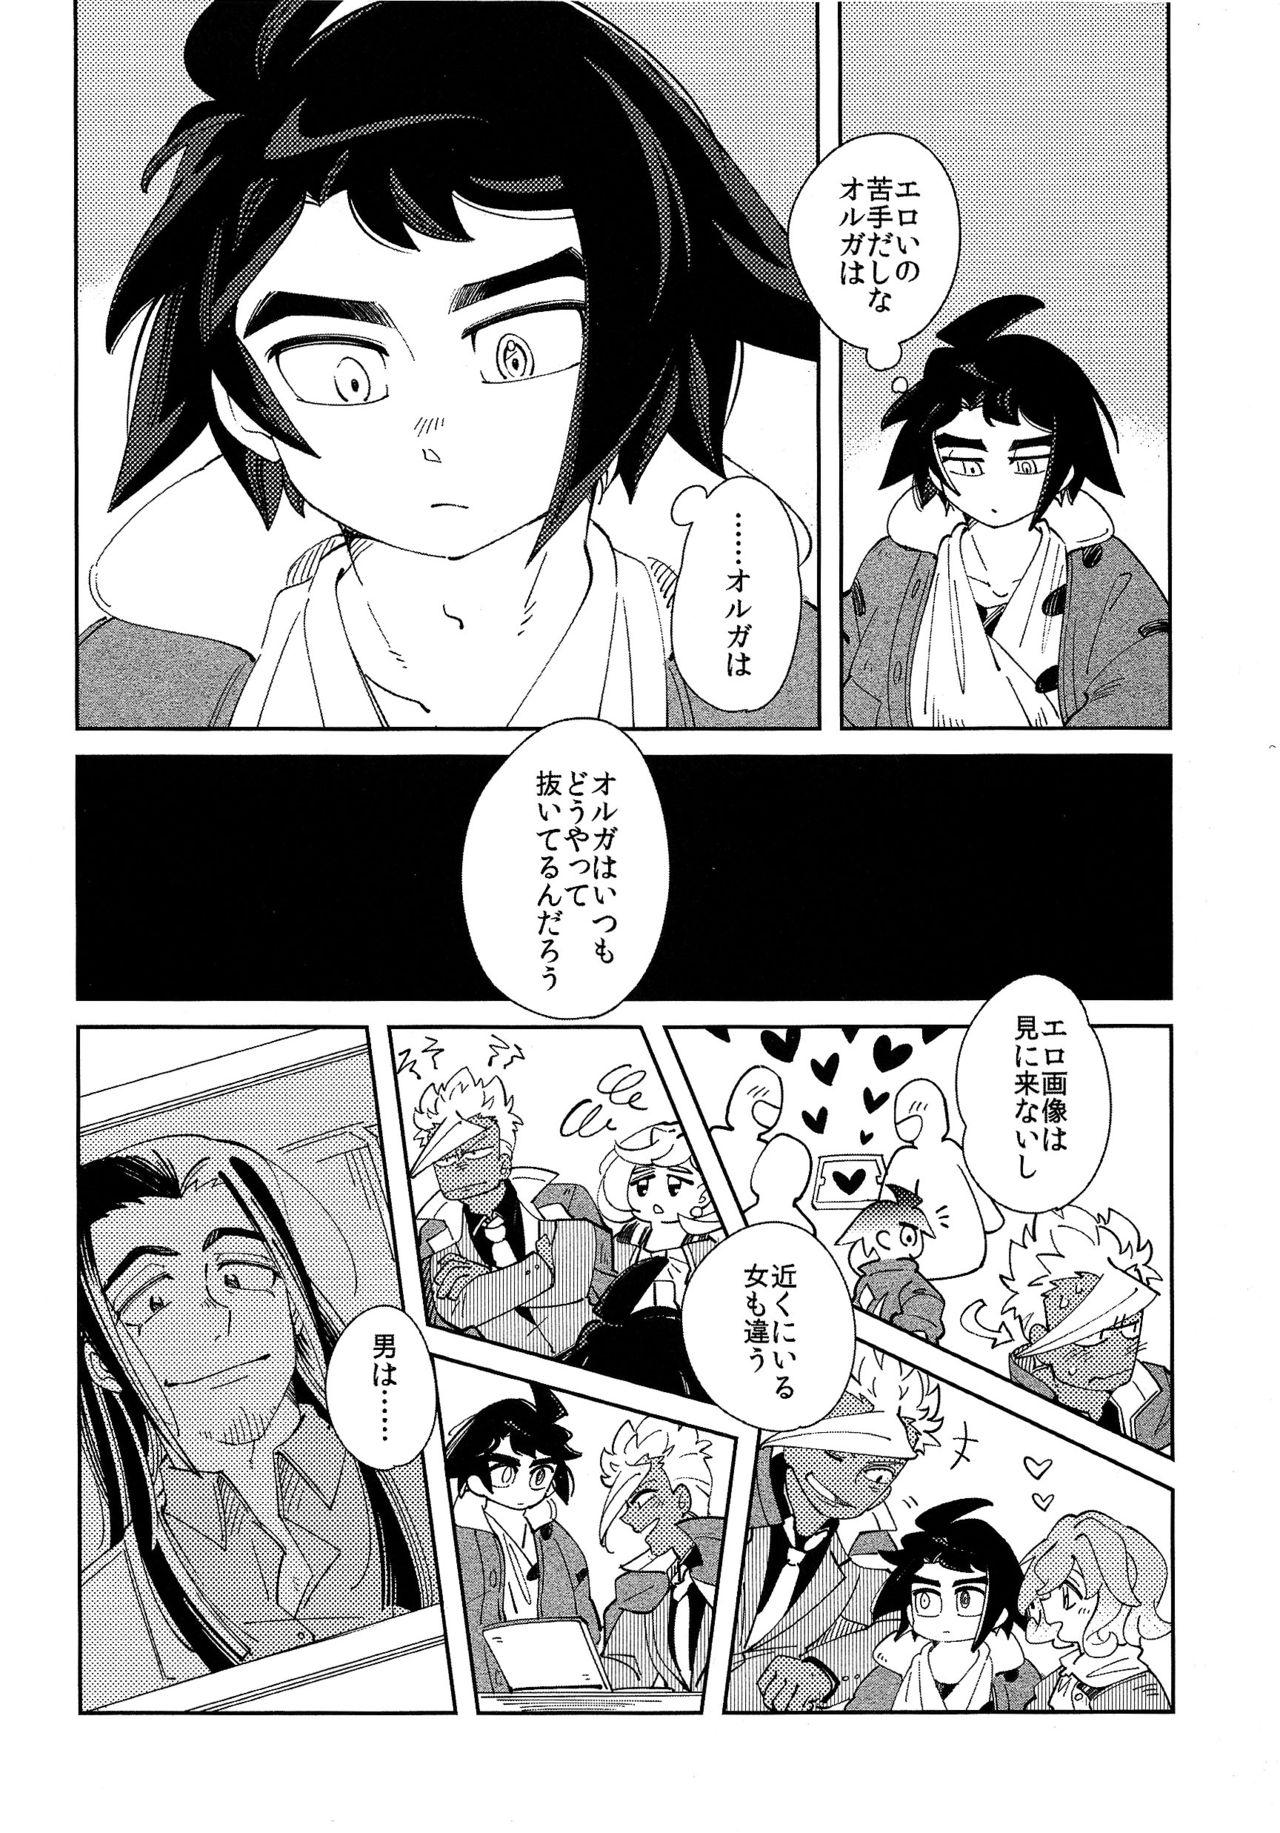 Ejaculation Moufu no Nakami wa? - Mobile suit gundam tekketsu no orphans Perverted - Page 5